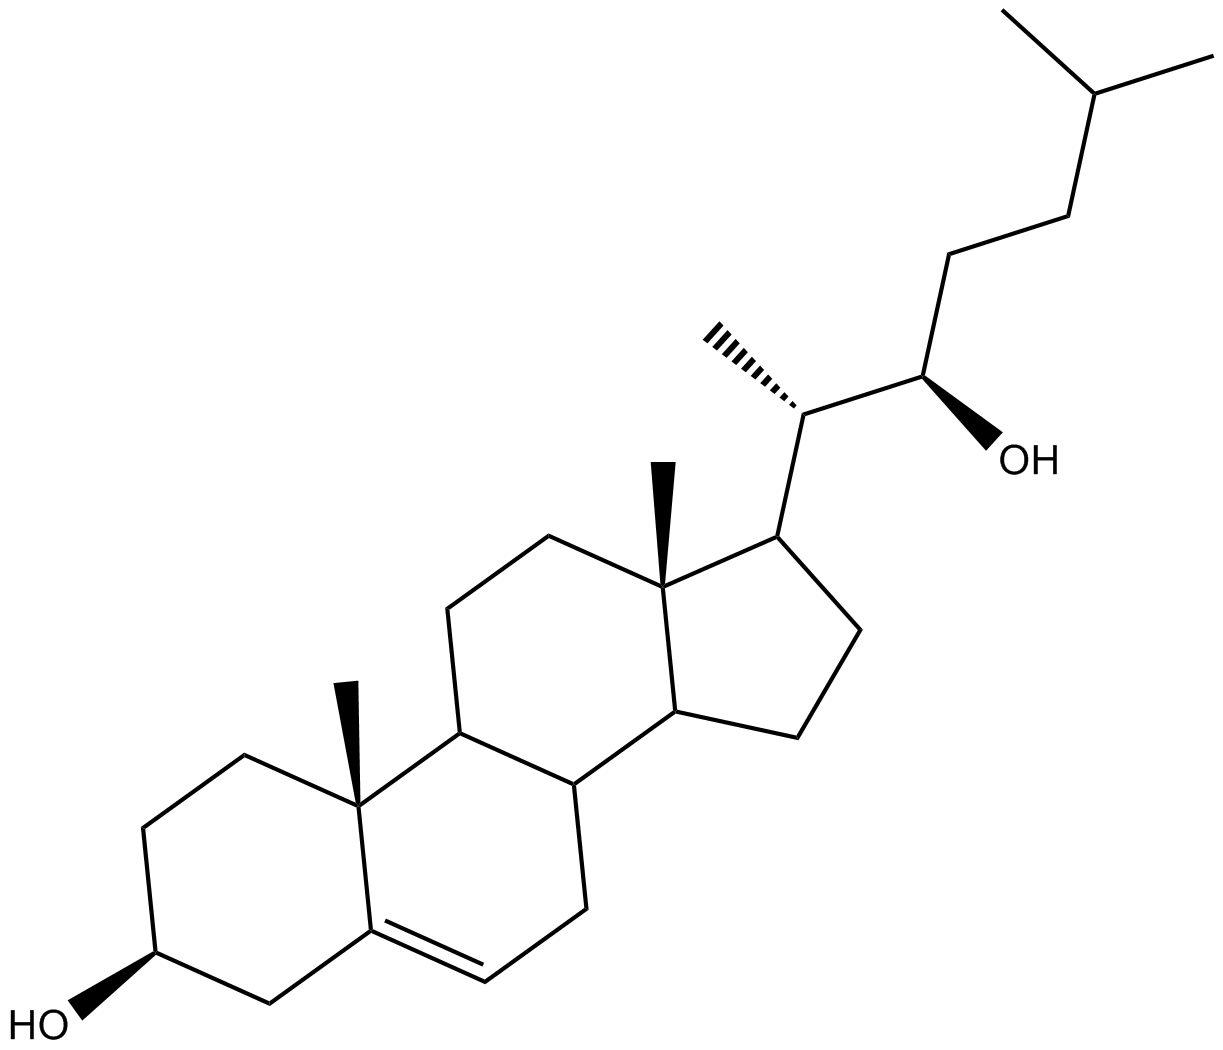 22(R)-hydroxy Cholesterol